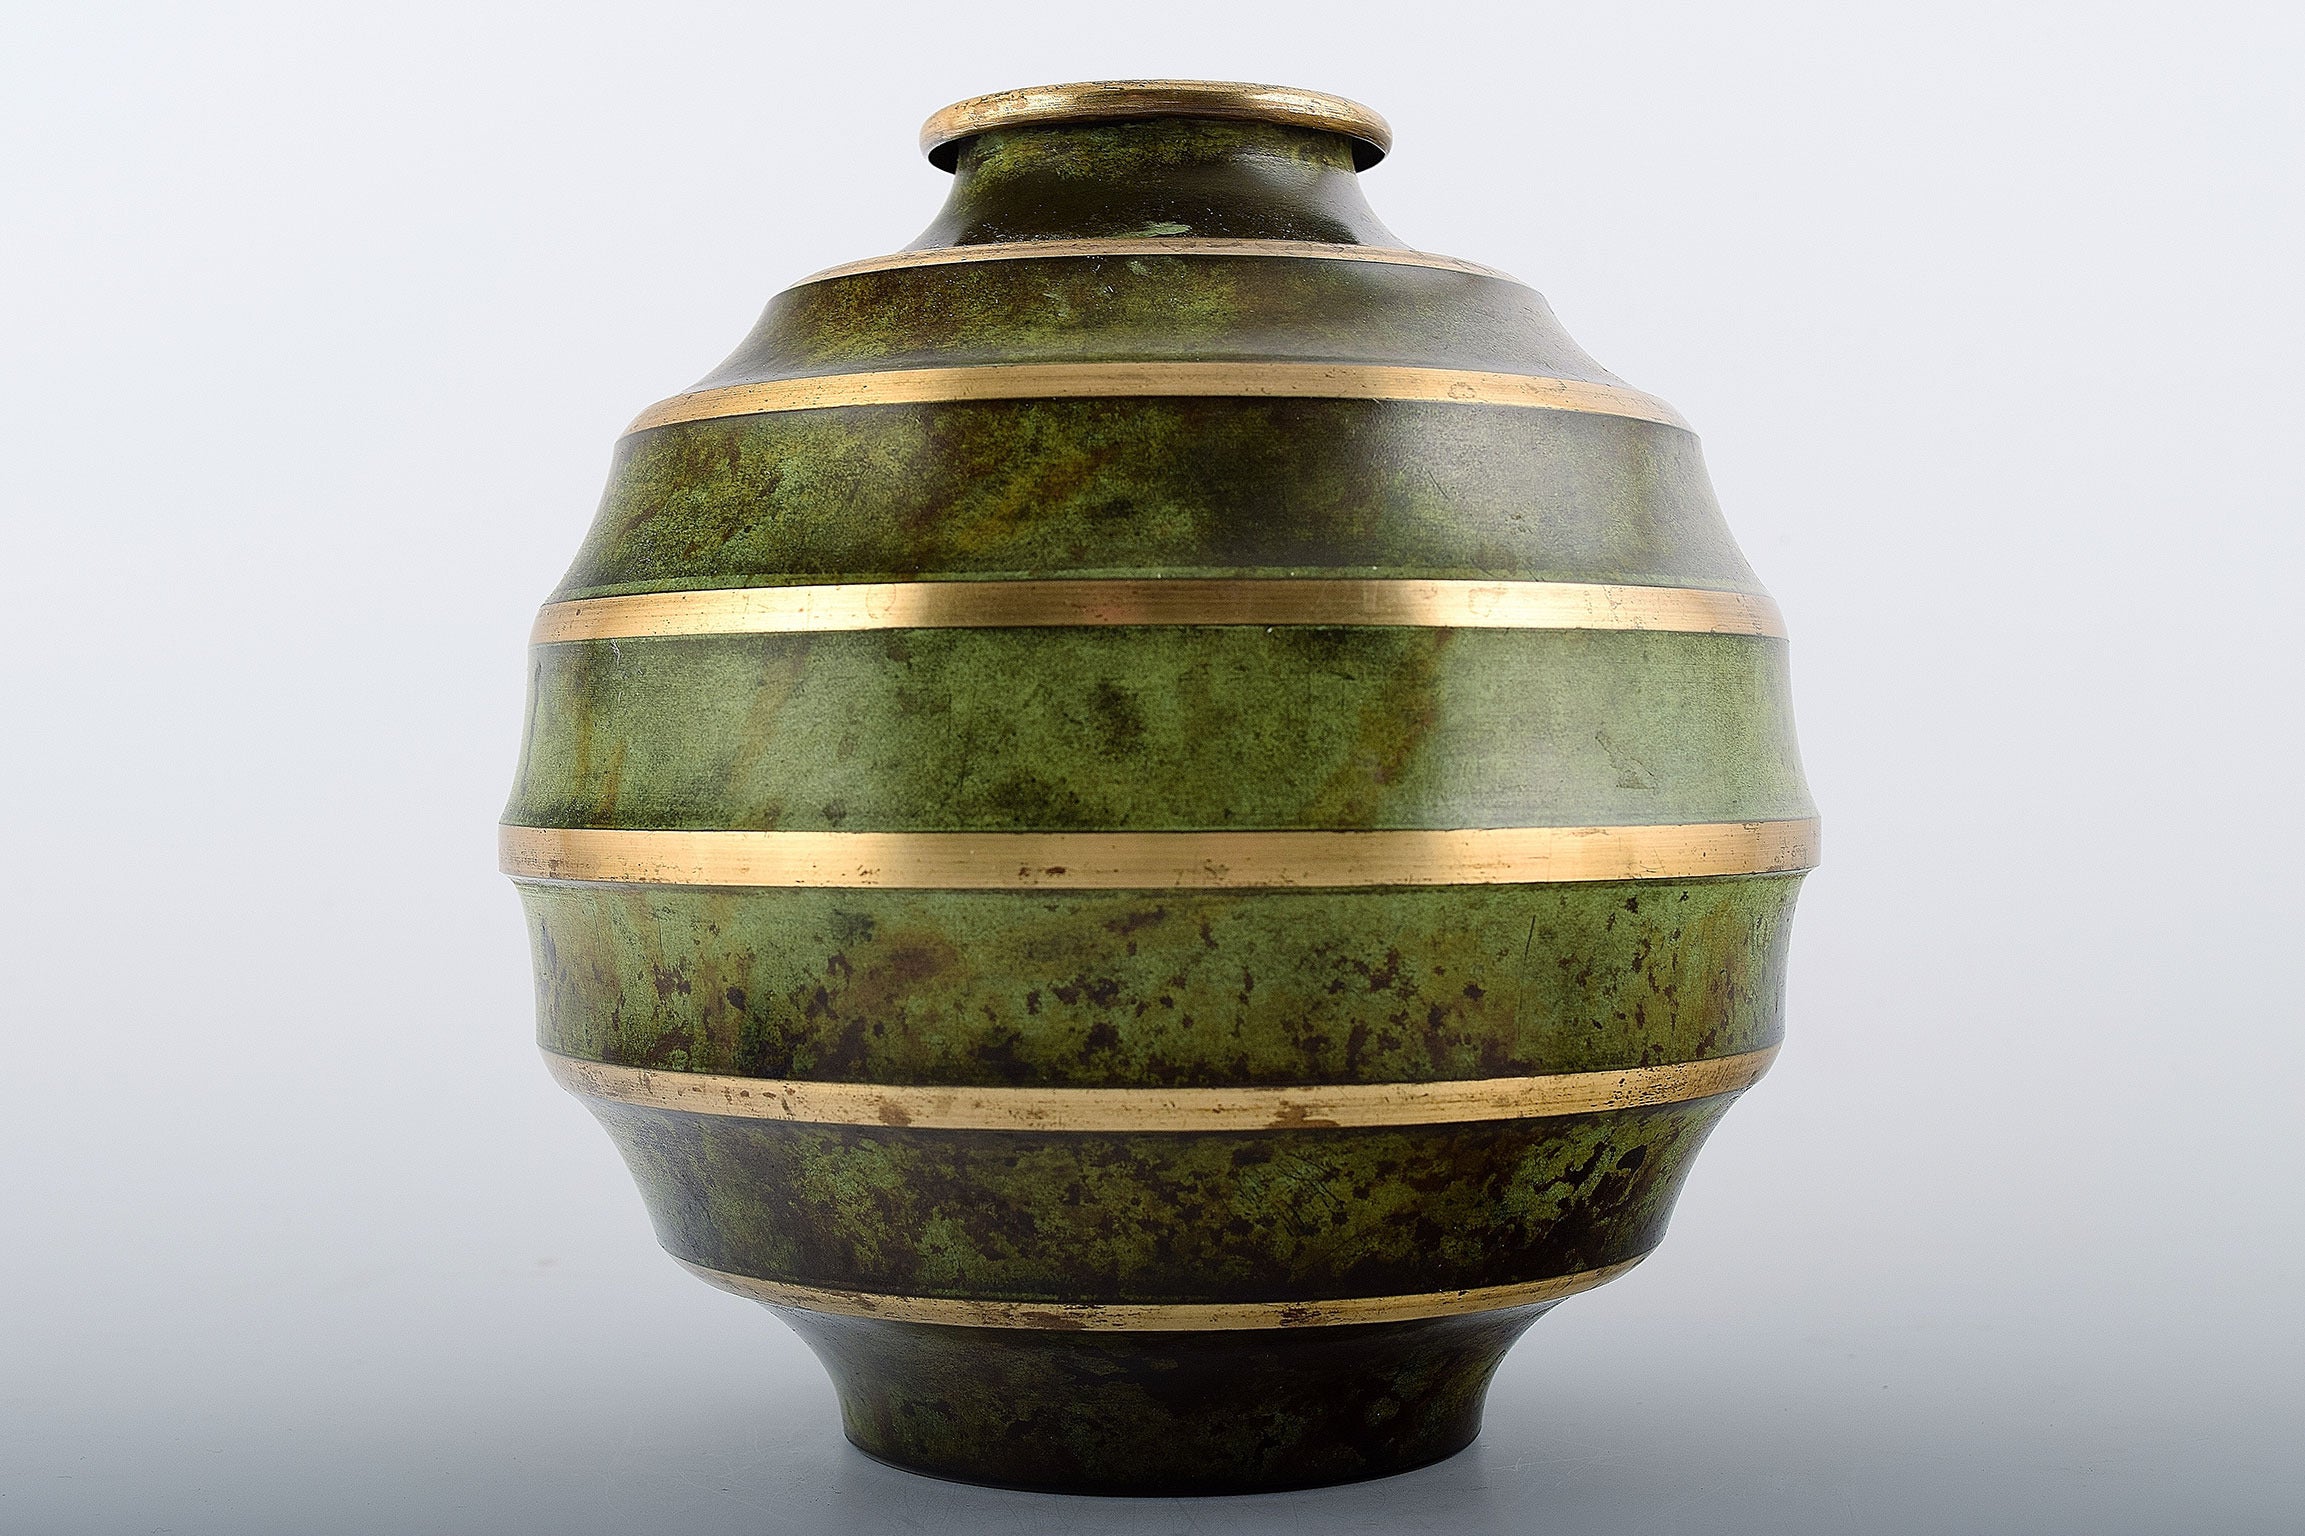 Art deco "SVM handarbete" vase in patinated bronze.